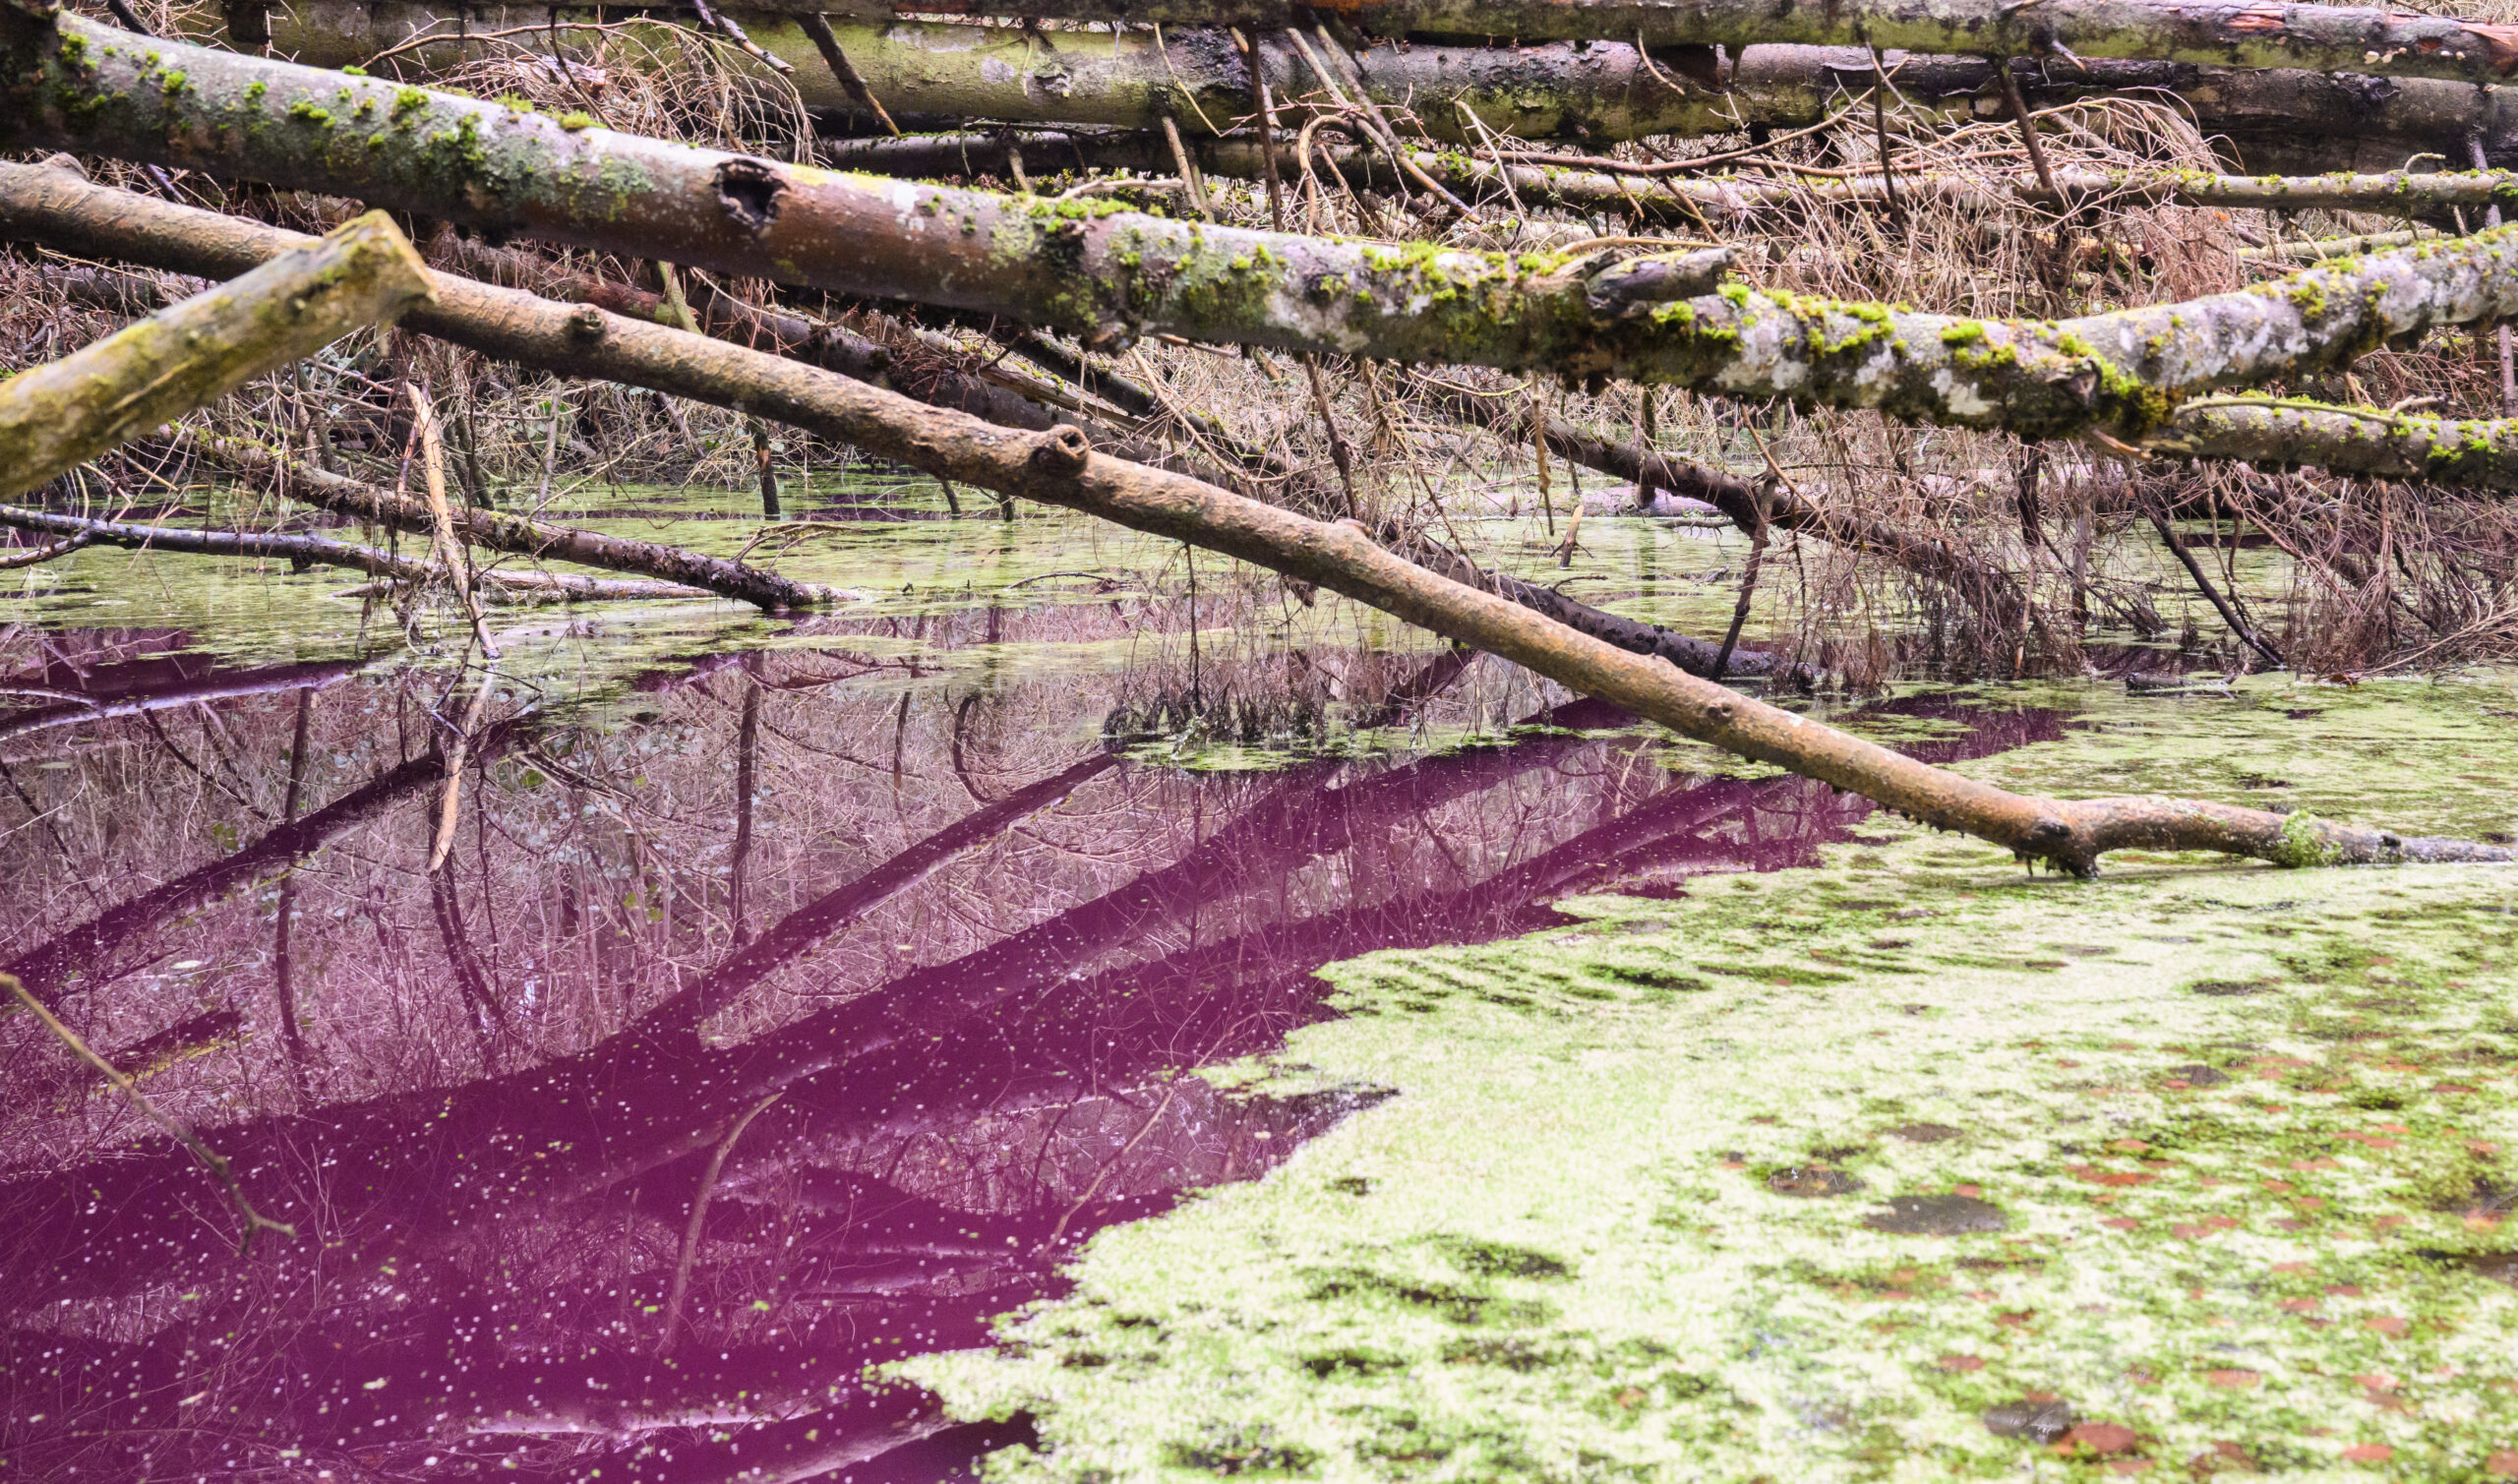 Purpurfarben schimmert das Wasser in einem kleinen Teich im Hildesheimer Wald bei Sibbesse.